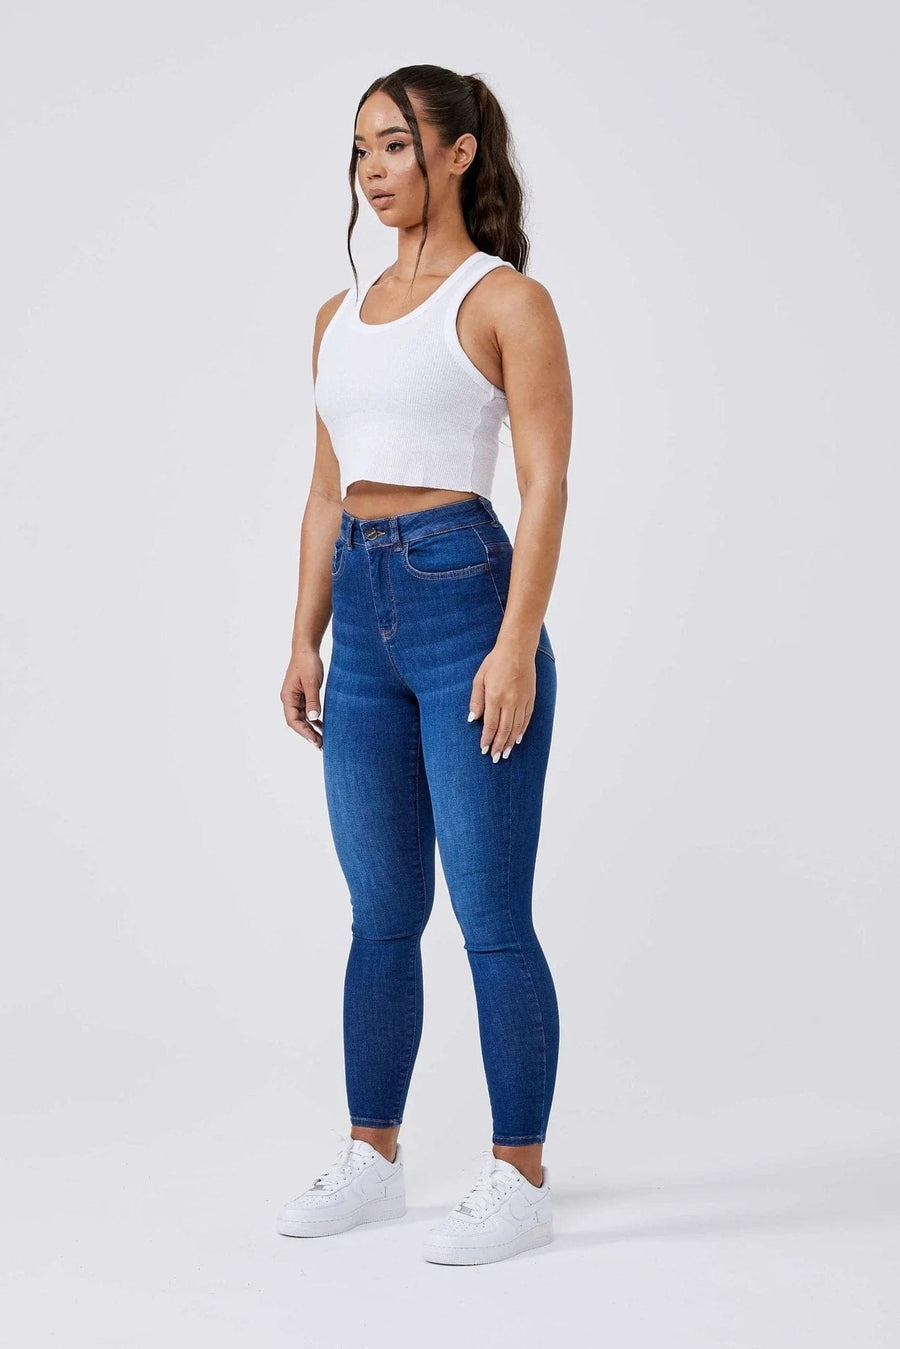 Legend London Women's Jeans SKINNY JEANS - DARK BLUE